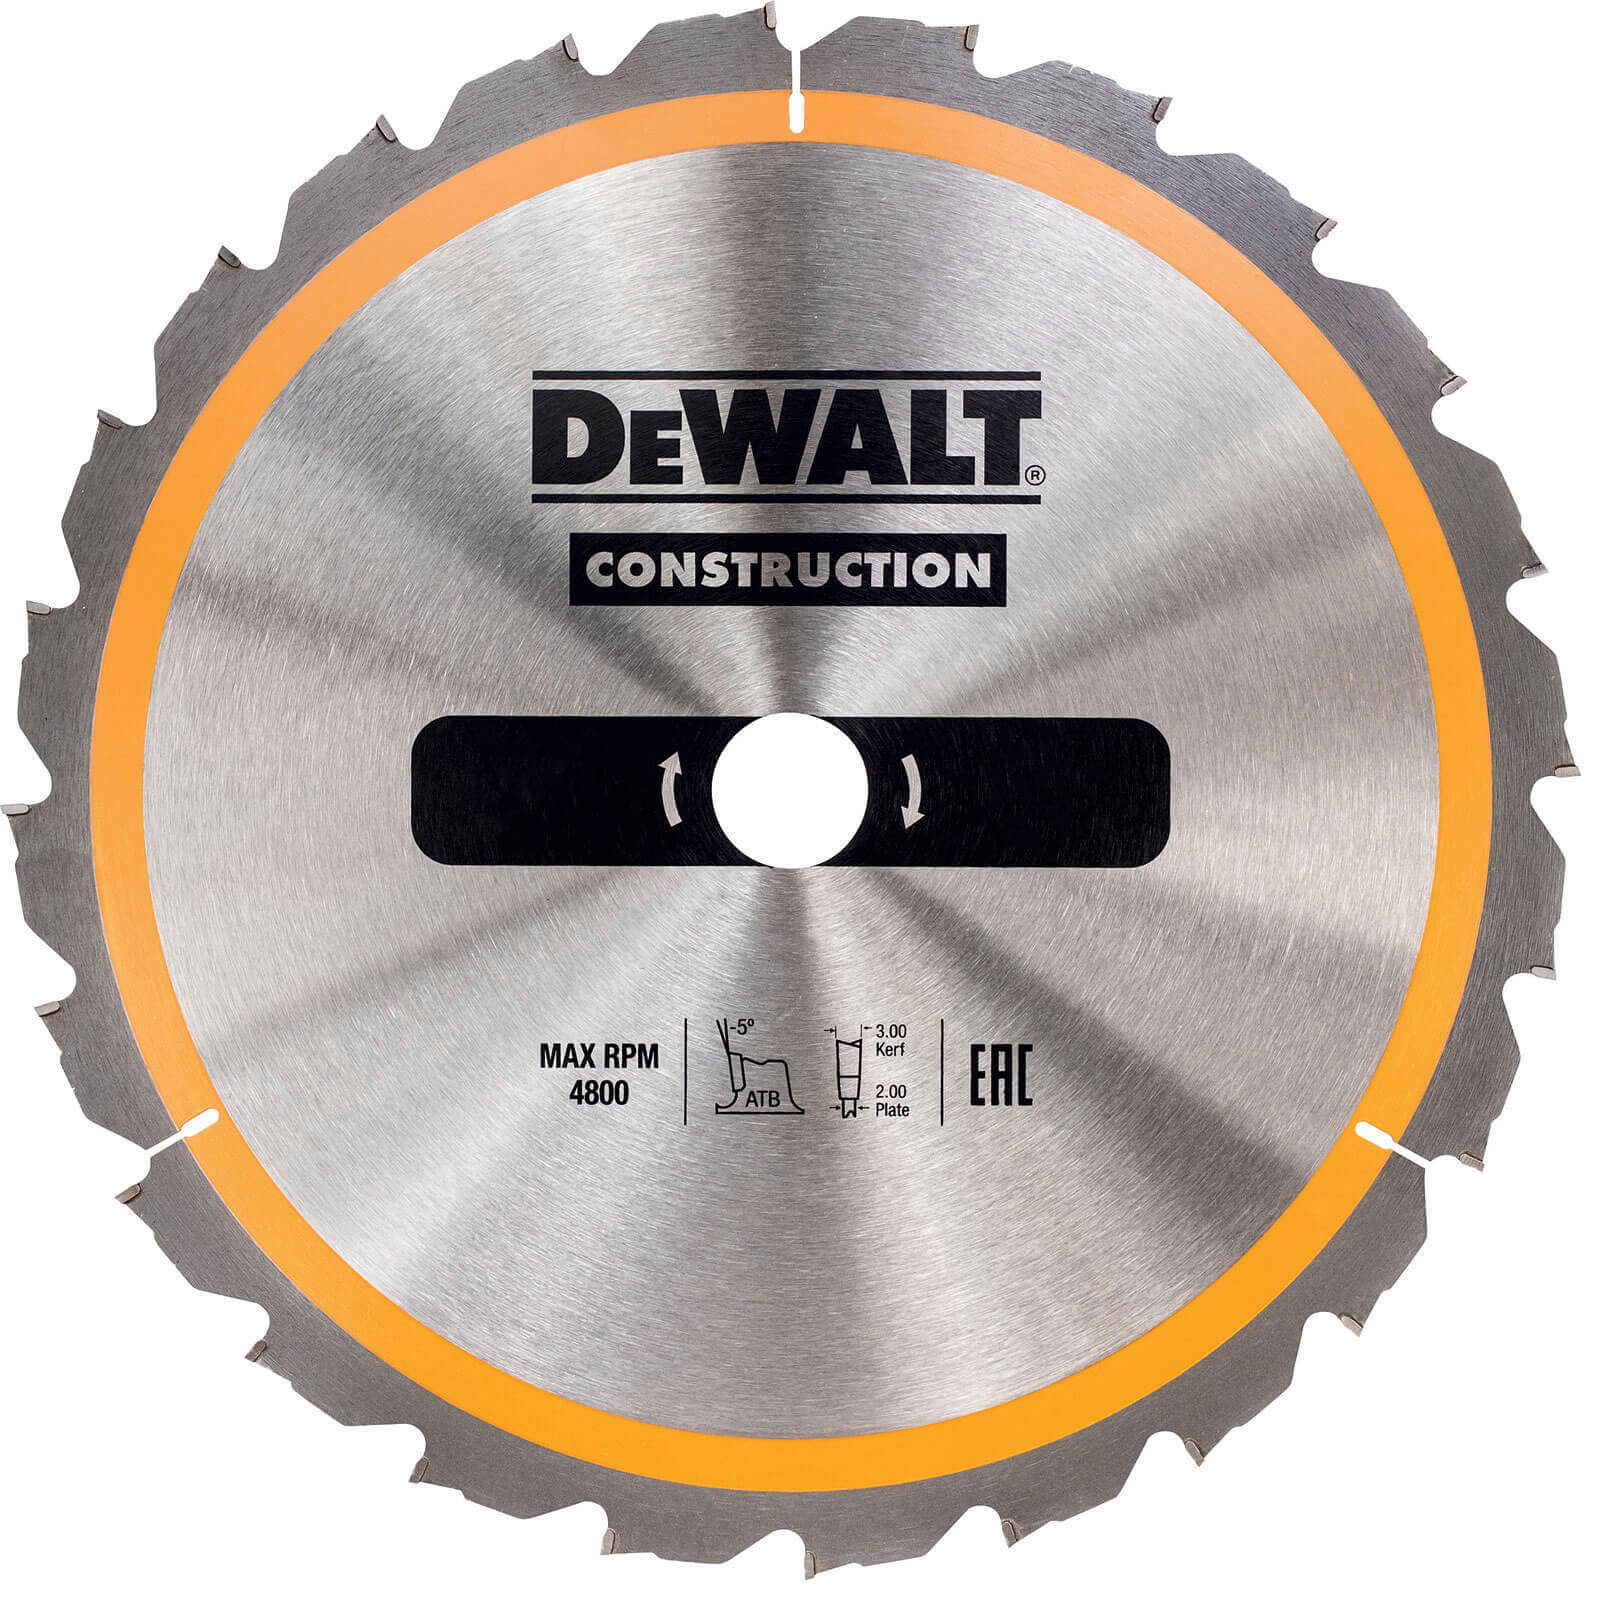 Photo of Dewalt Construction Circular Saw Blade 184mm 24t 16mm